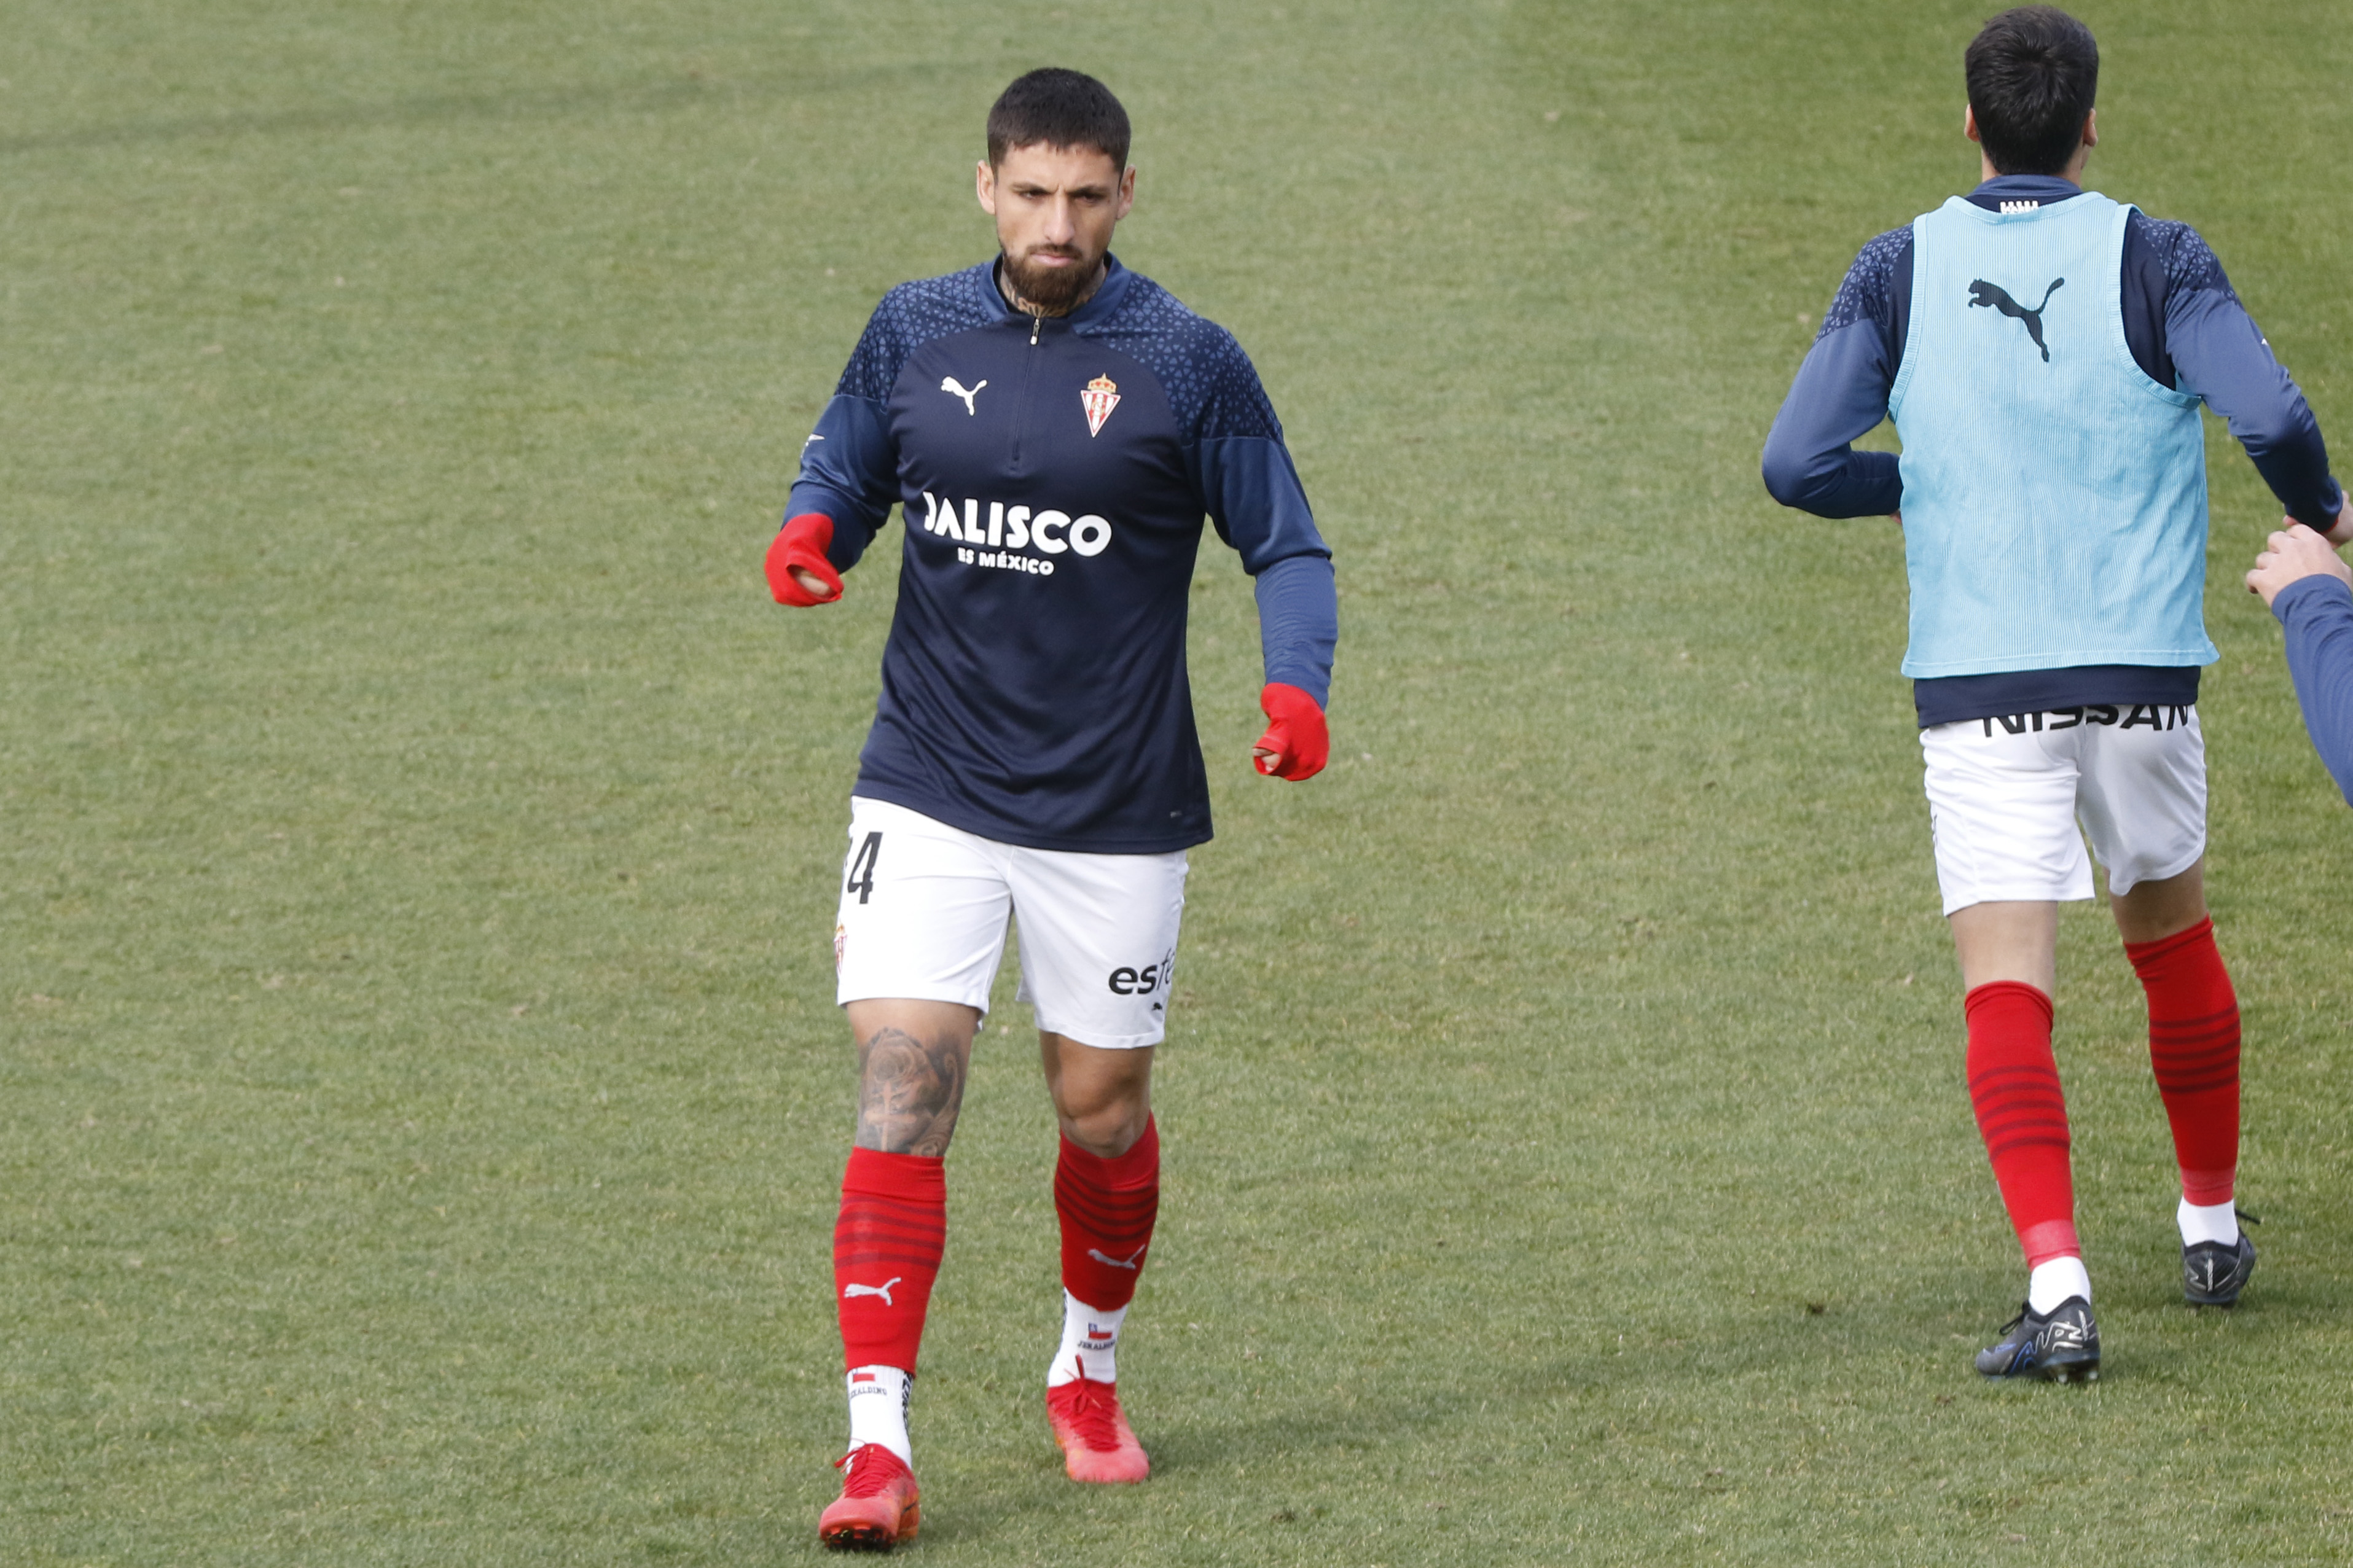 Ignacio Jeraldino busca su salida del Sporting Gijón para volver